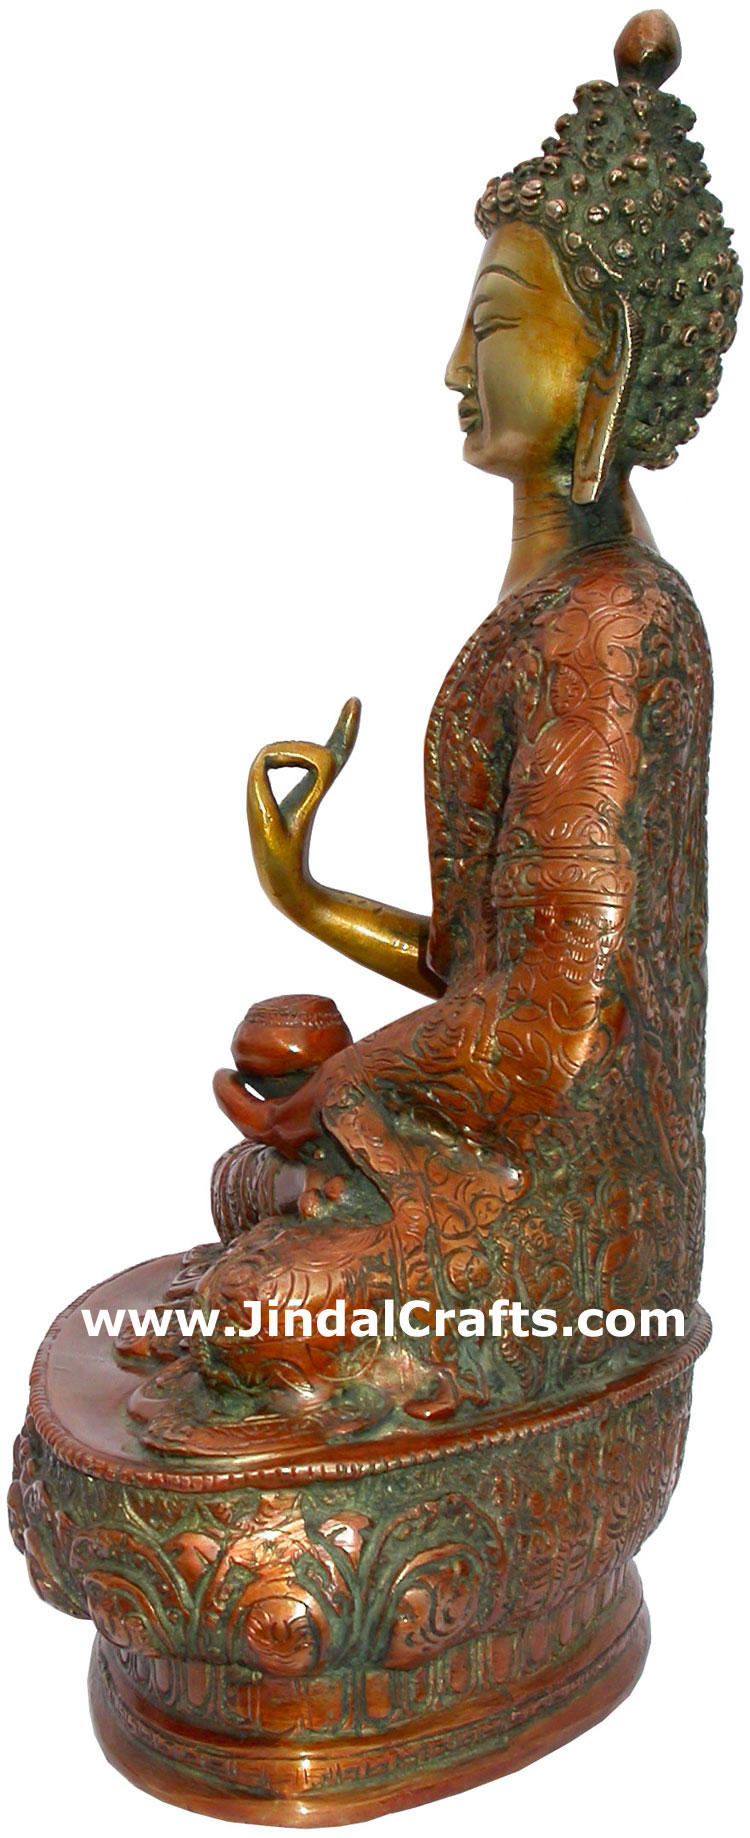 Brass Buddhist Sculpture India Carving Art